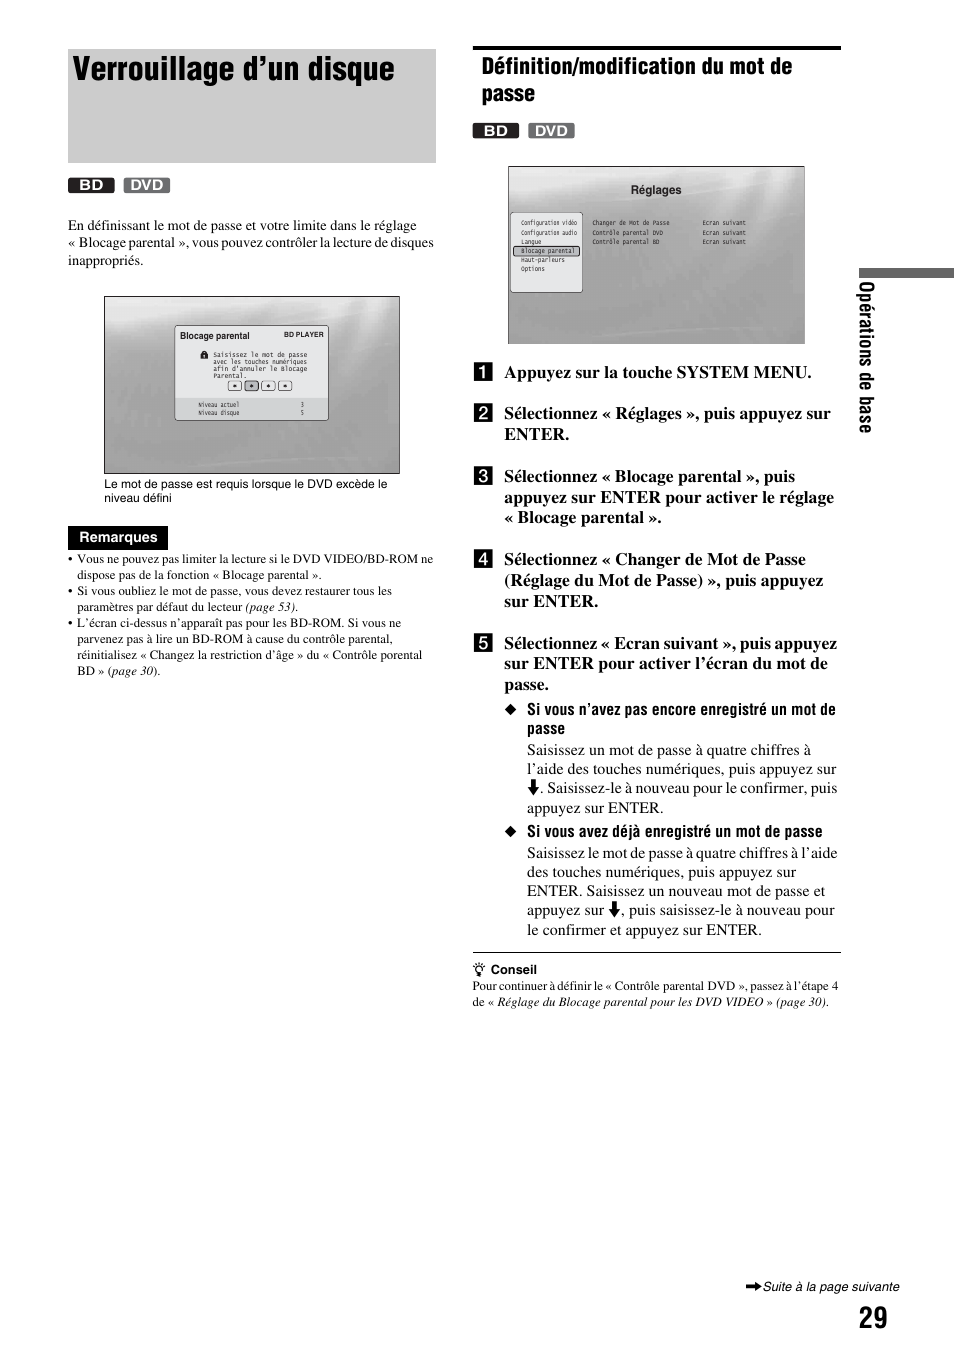 Verrouillage d’un disque, Définition/modification du mot de passe, Opérations de base | Sony BDP-S300 Manuel d'utilisation | Page 29 / 67